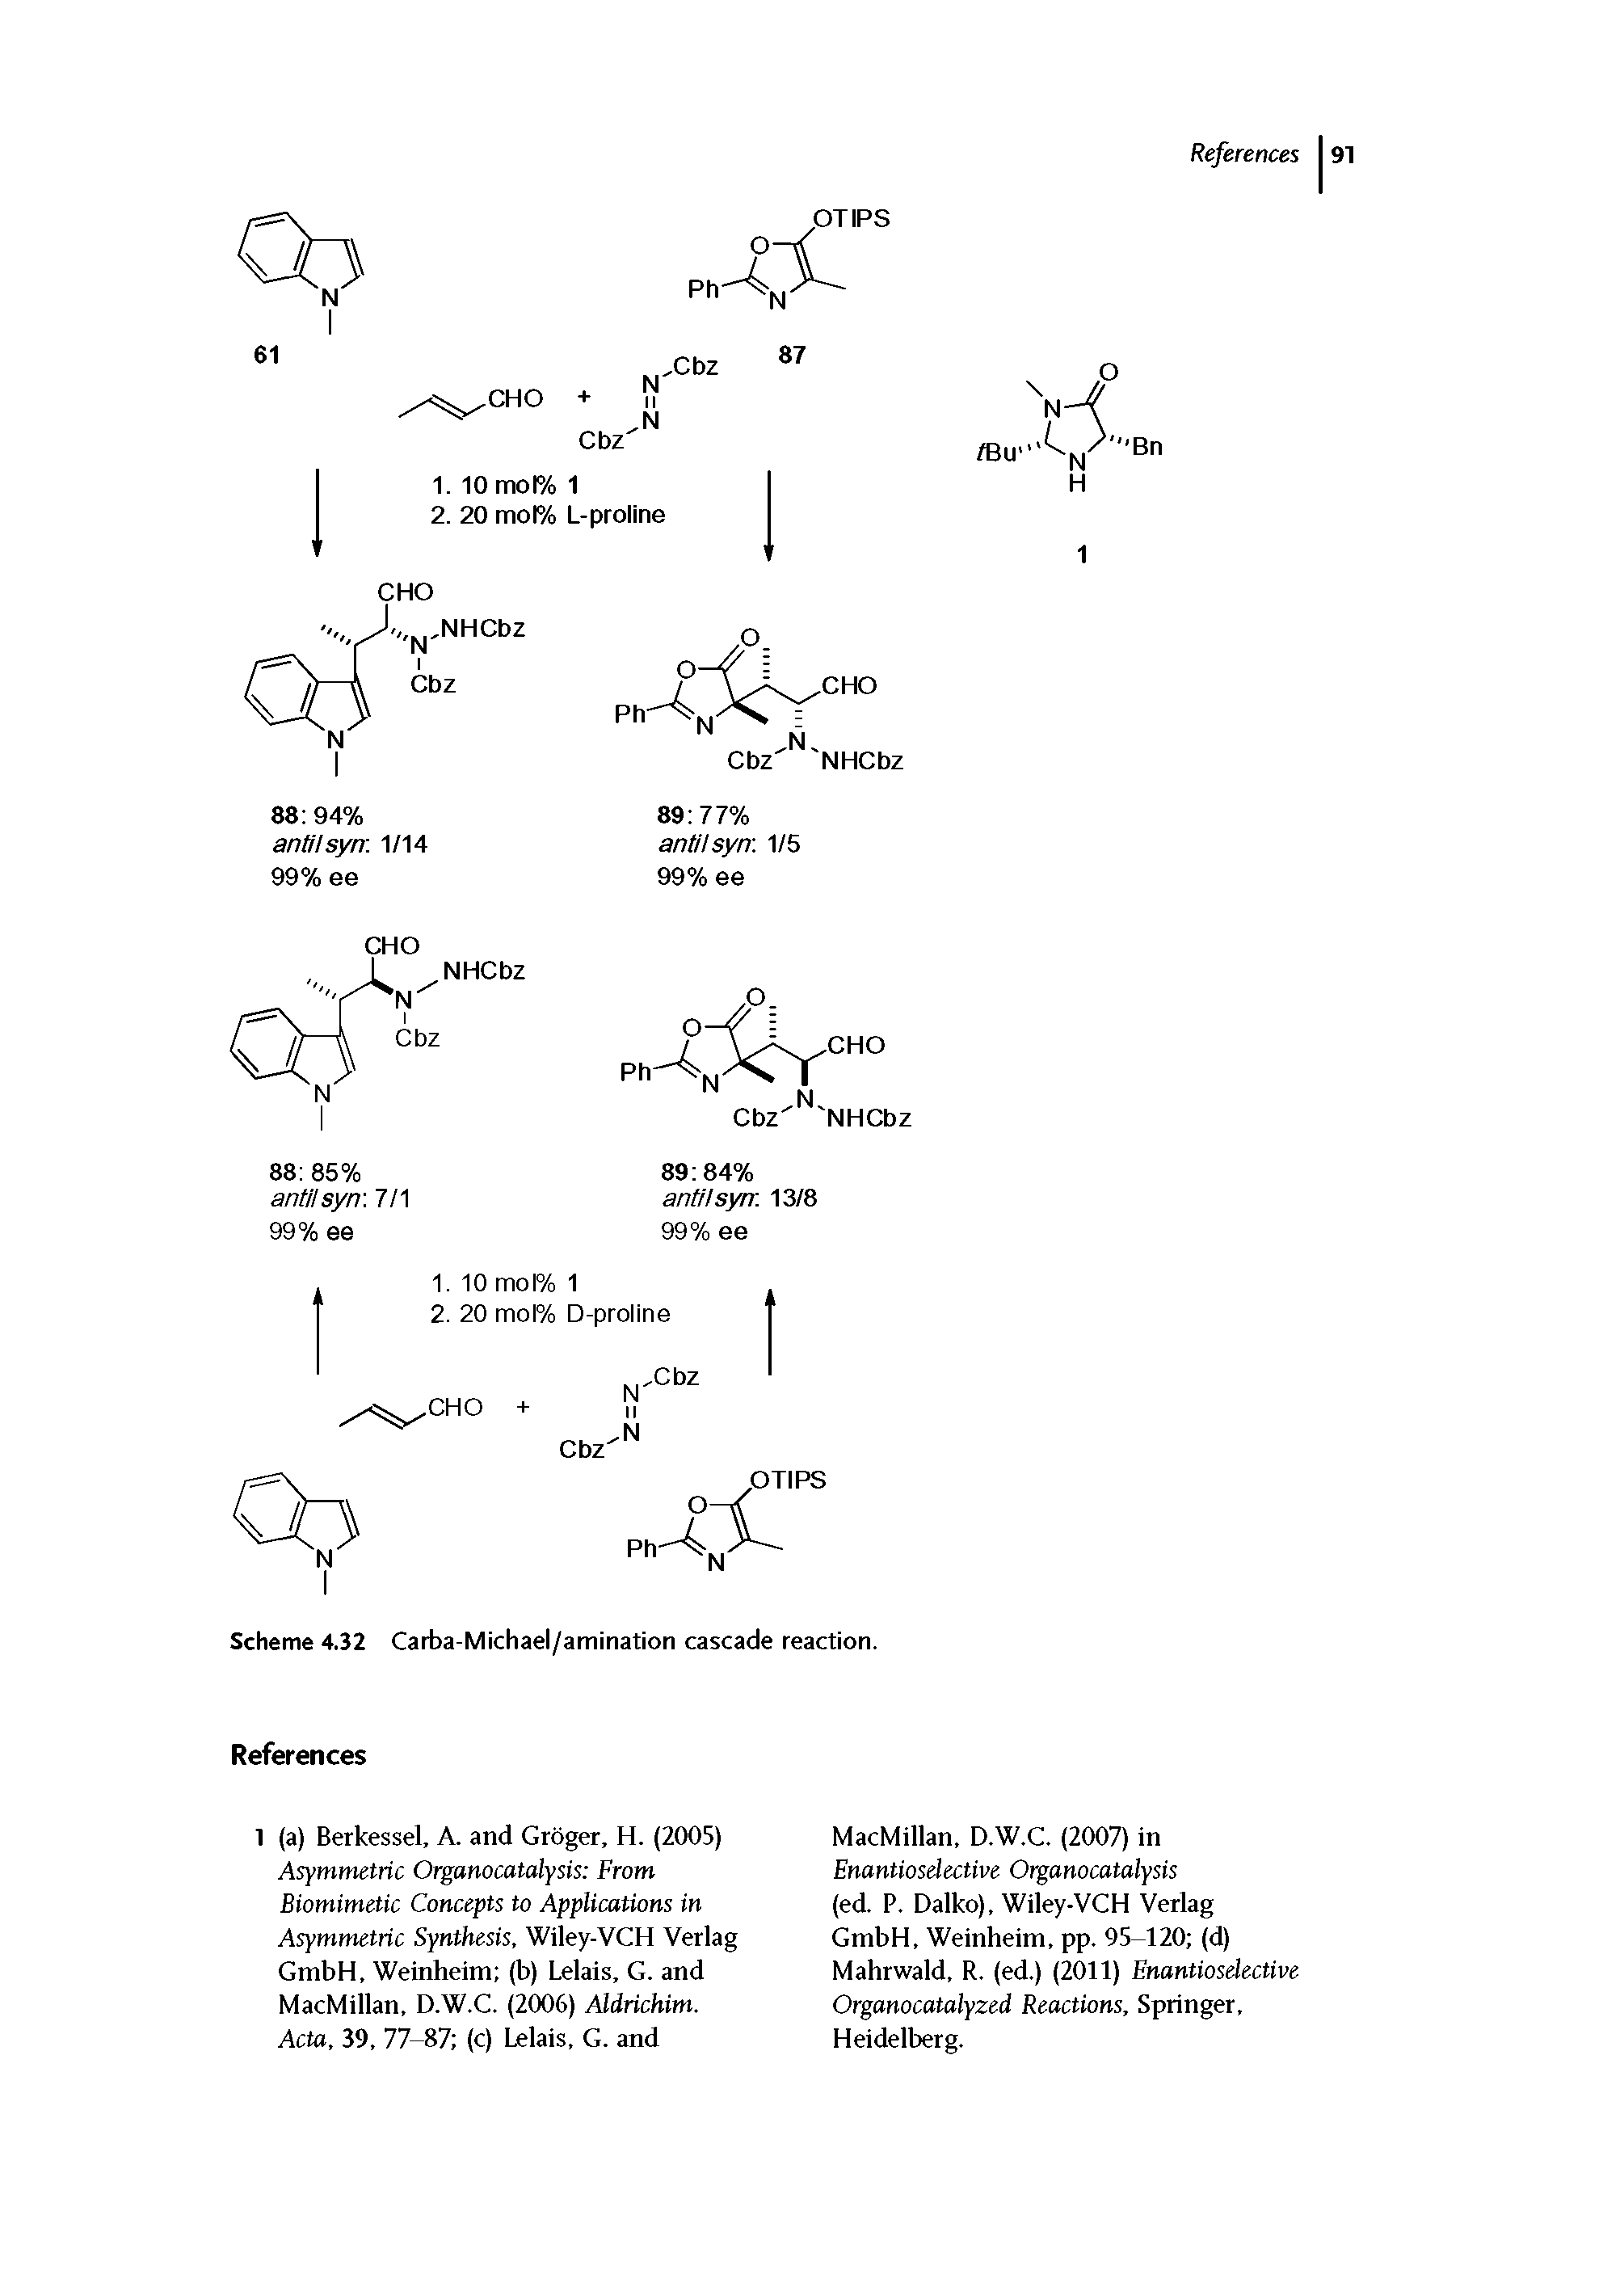 Scheme 4.32 Carba-Michael/amination cascade reaction.